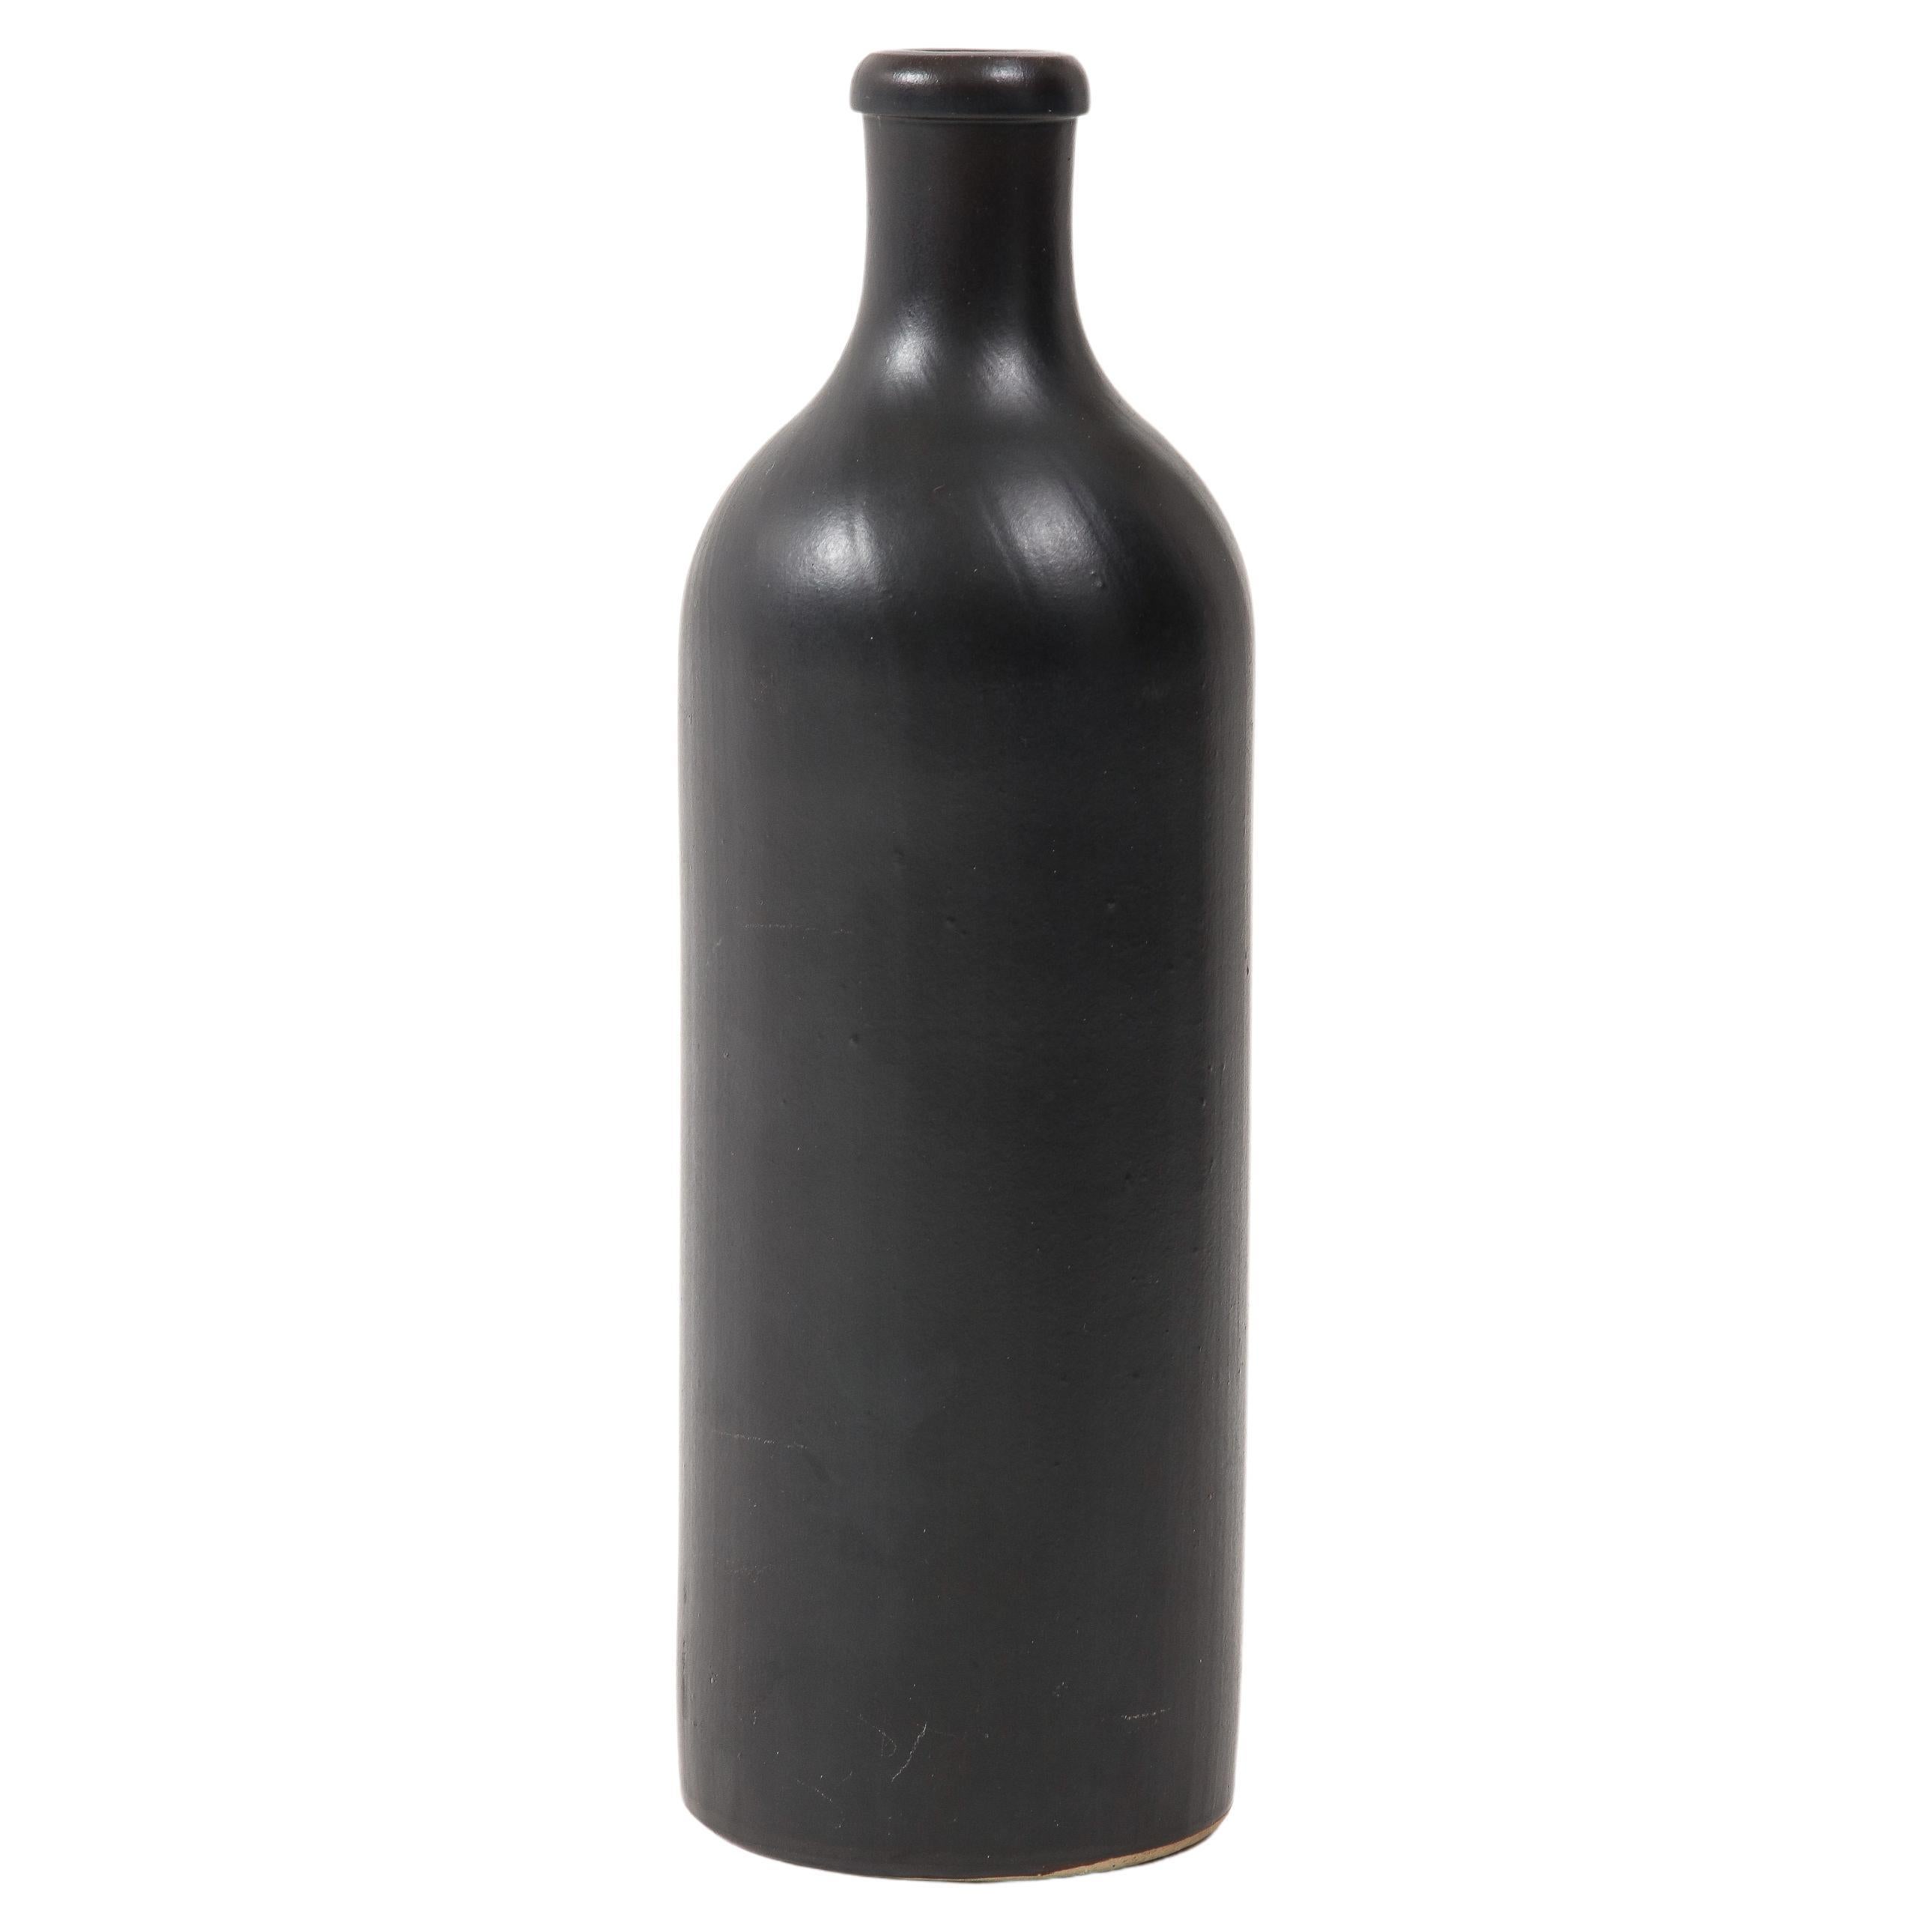 Large Georges Jouve Style Period Black Matte Vase, France, c. 1950 For Sale